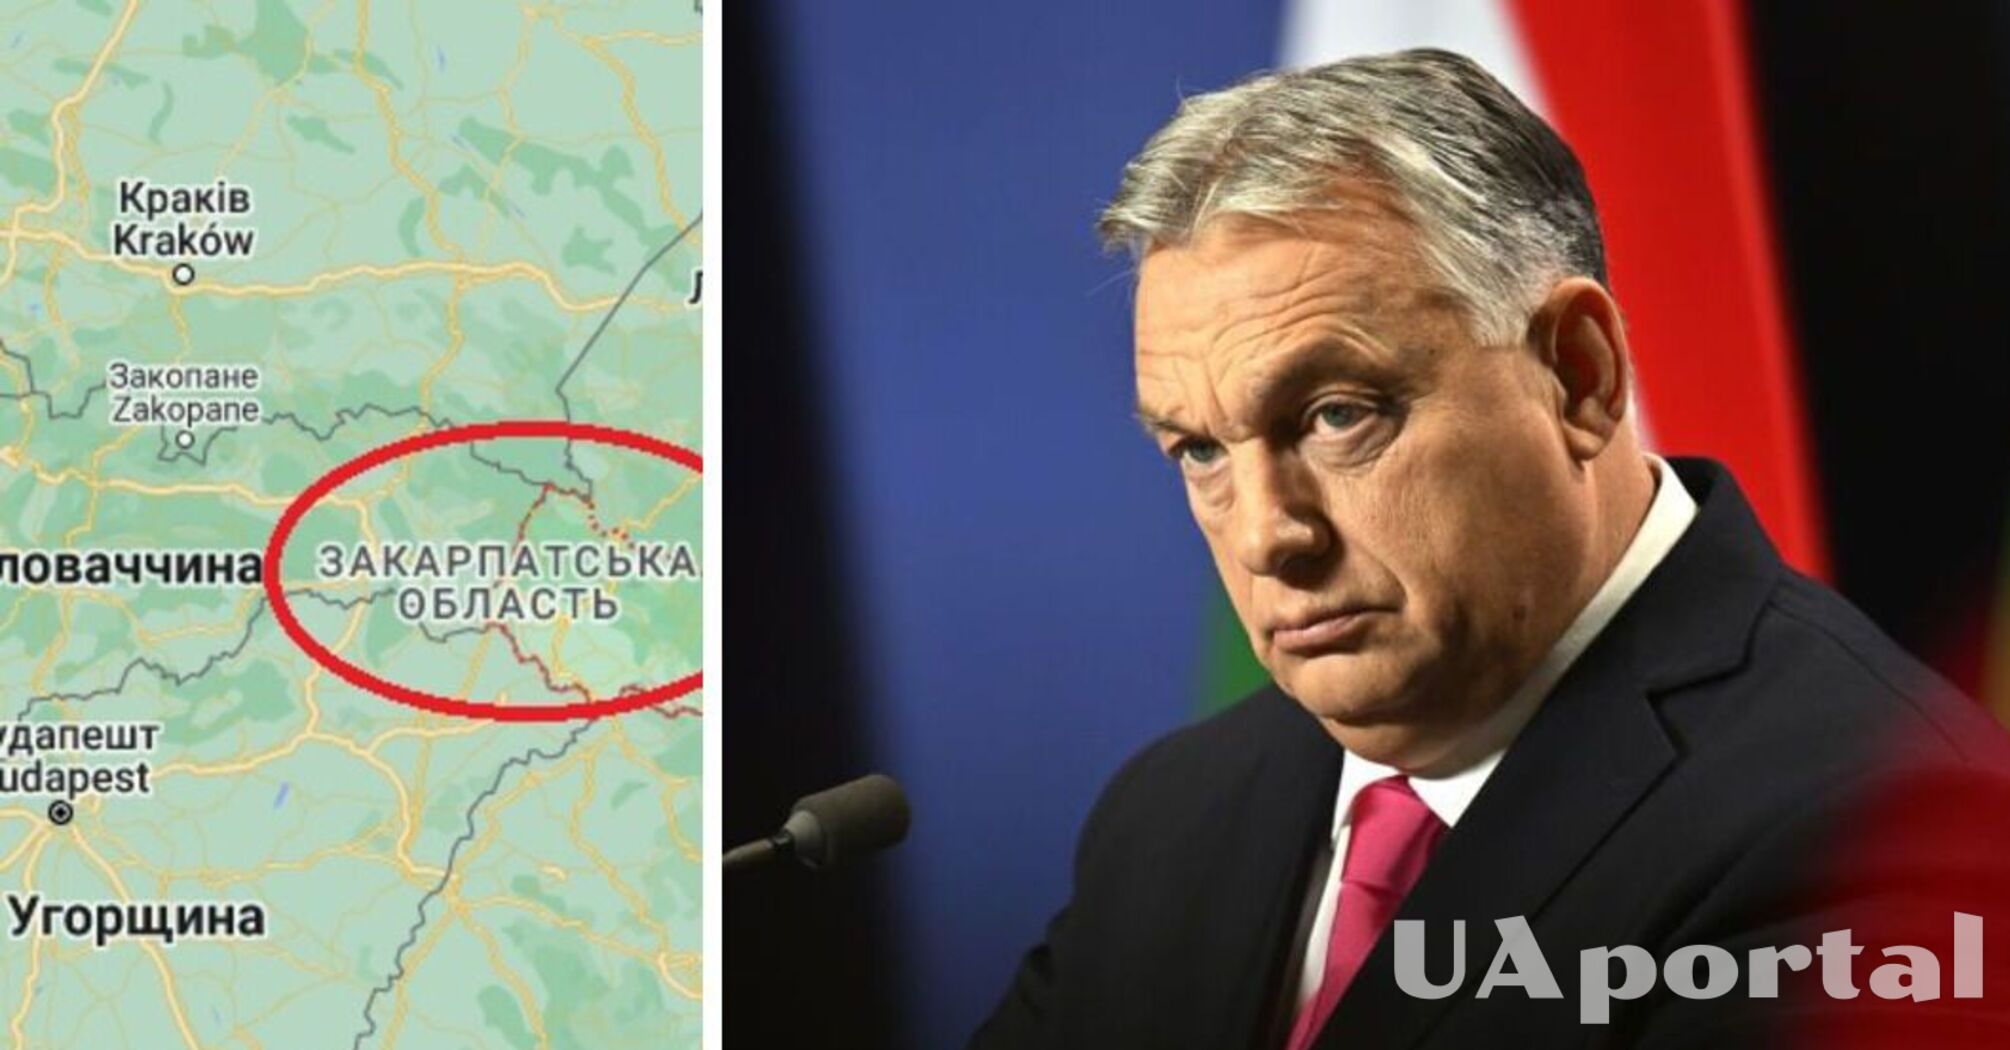 Ссылается на перепись от 2001 года: Орбан требует признания всего Закарпатья 'традиционно венгерским' - СМИ